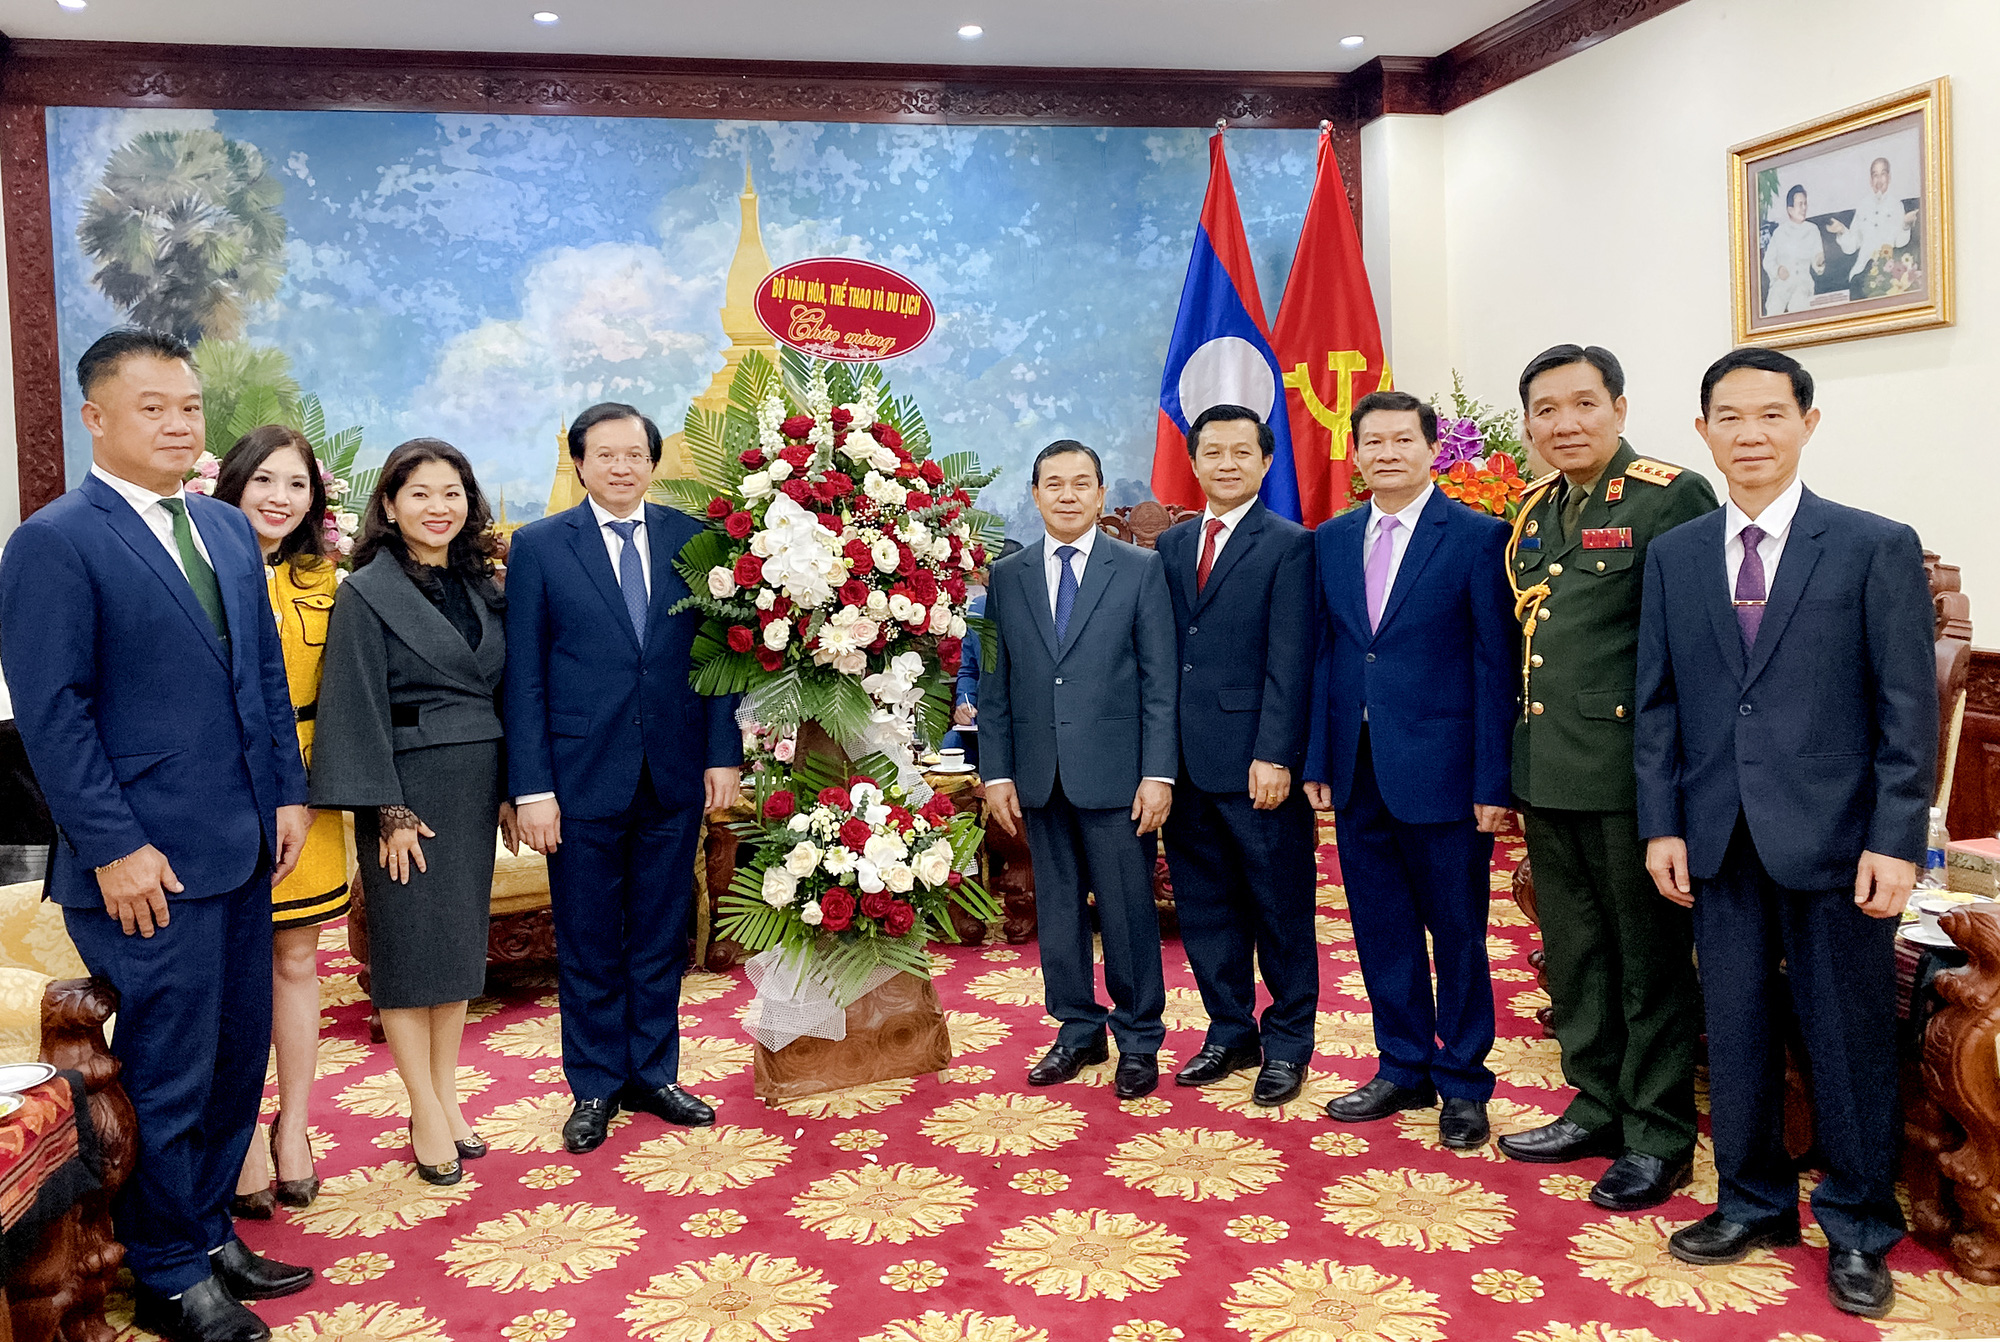 Thứ trưởng Tạ Quang Đông dẫn đầu đoàn Bộ Văn hóa, Thể thao và Du lịch chúc mừng Quốc khánh Lào và kỷ niệm 100 năm ngày sinh Chủ tịch Kay sỏn- phôm vi hản - Ảnh 2.